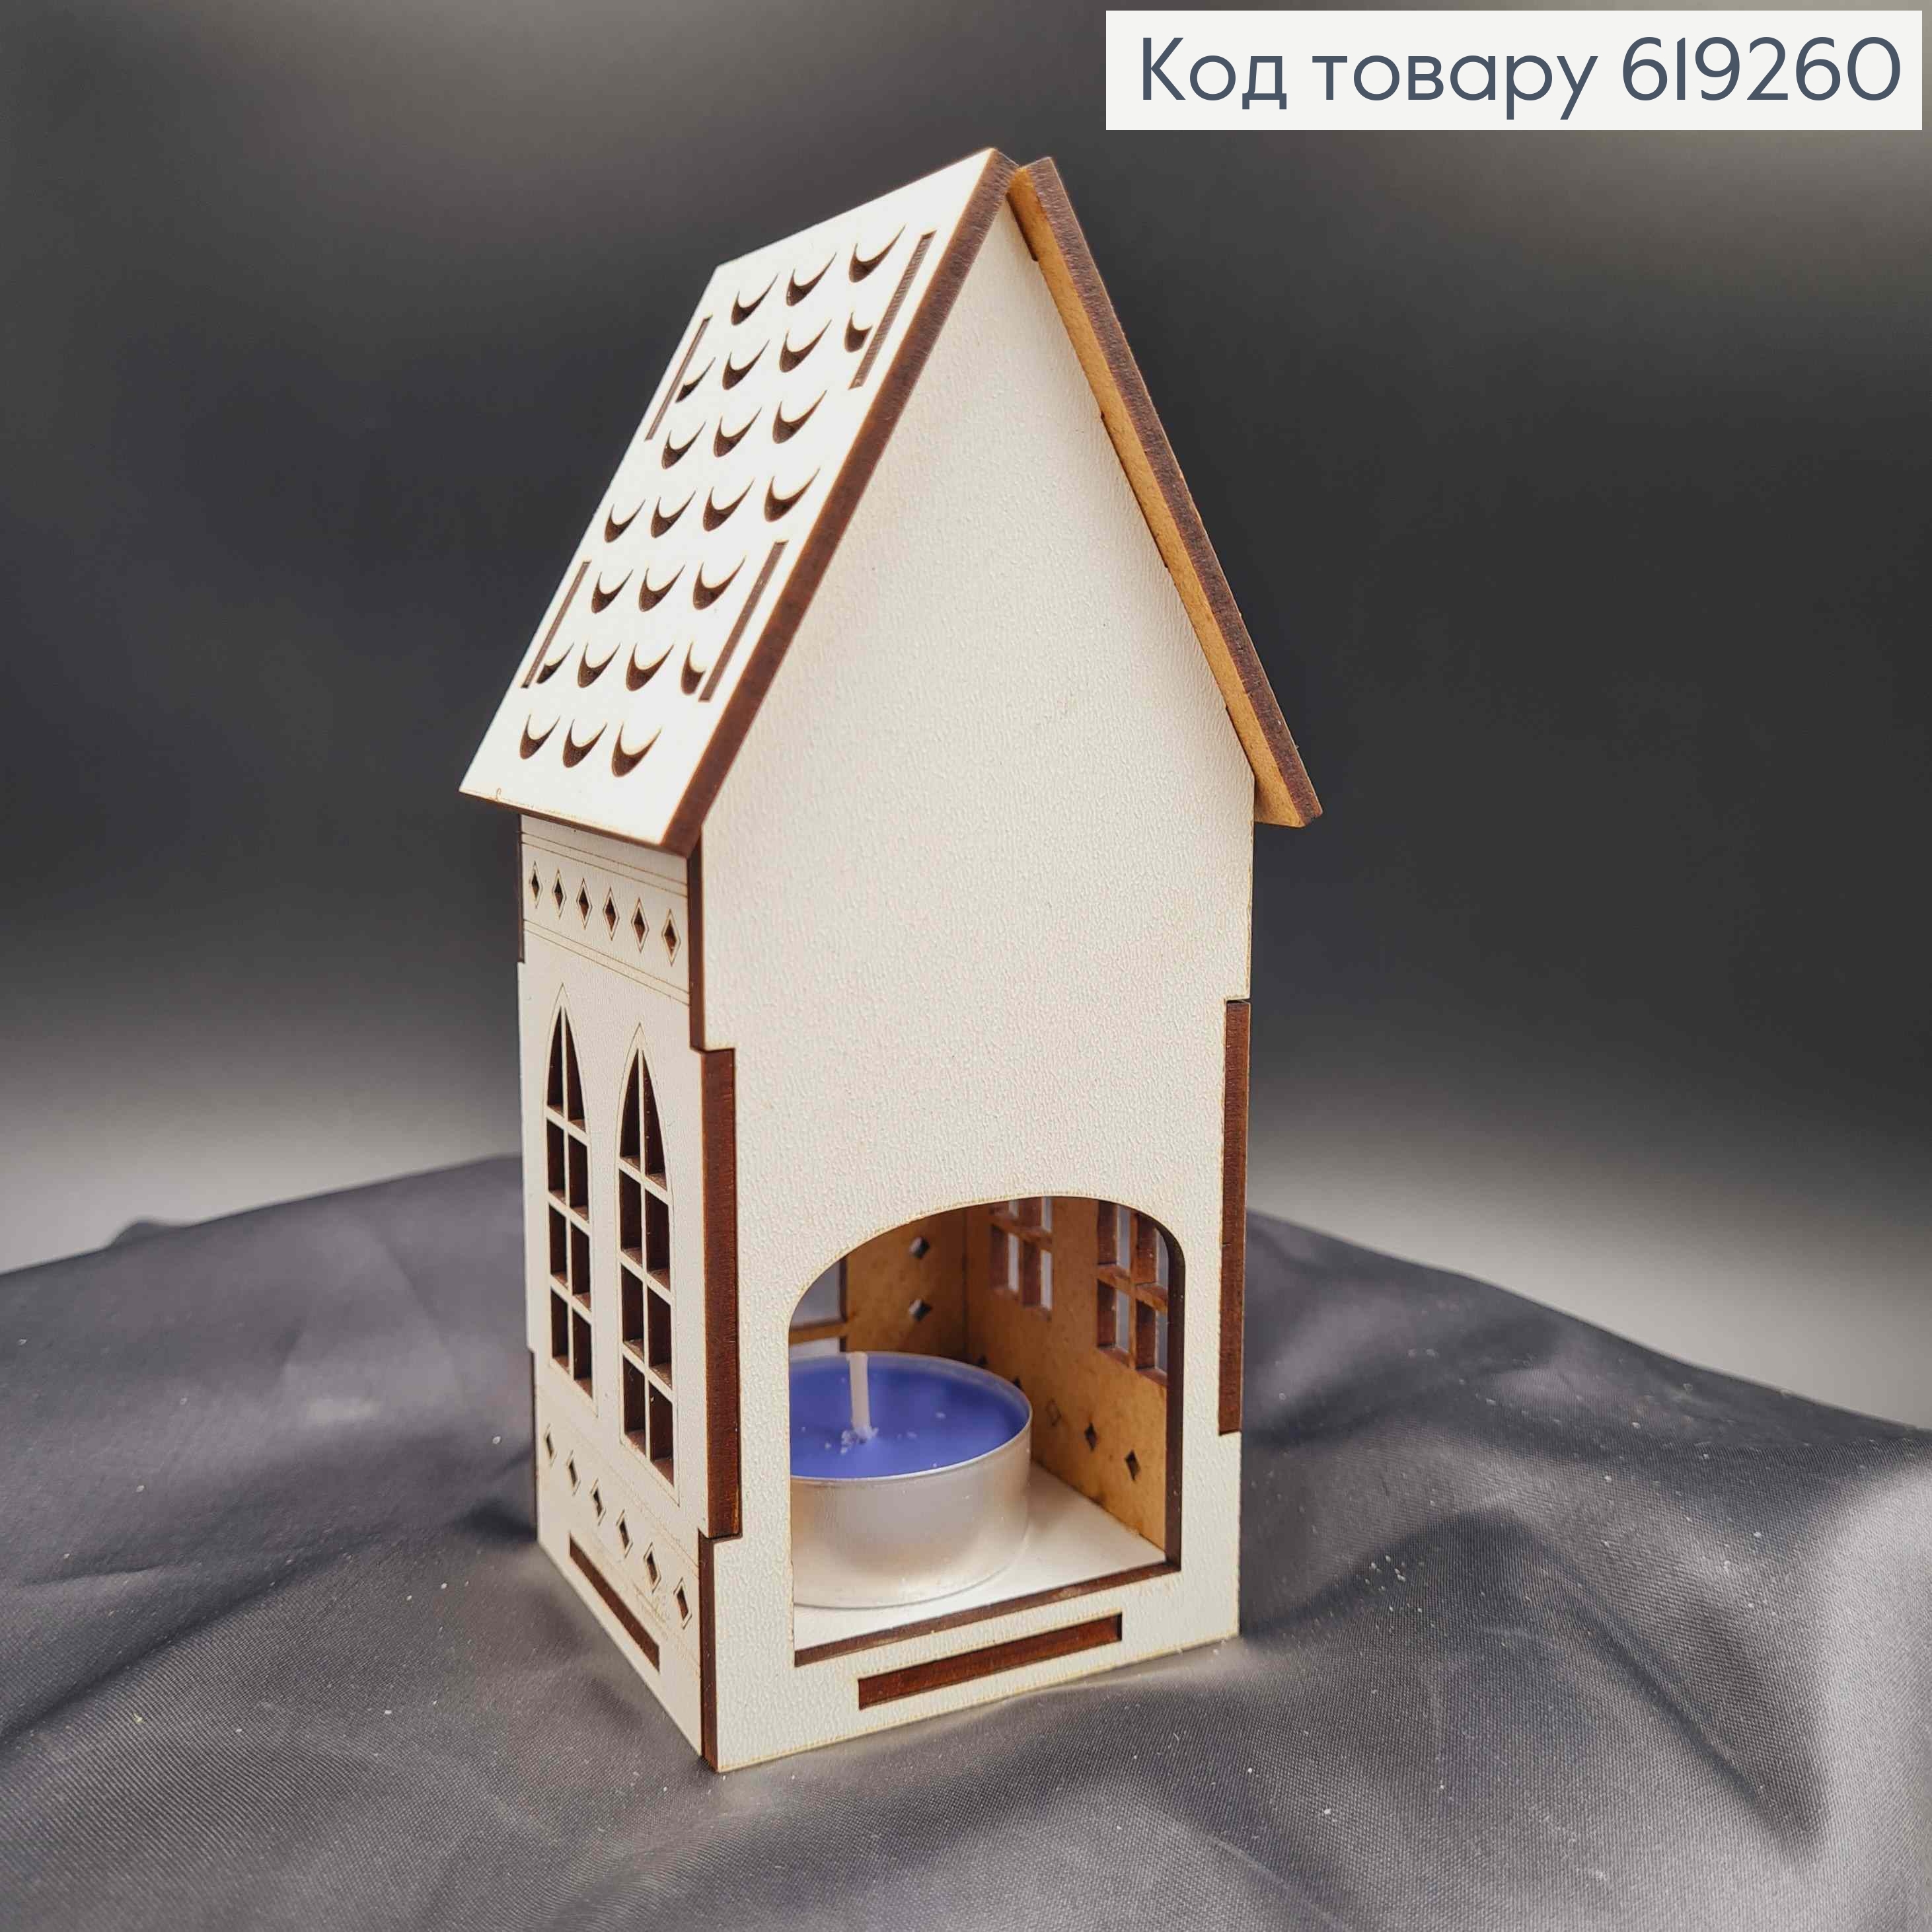 Подсвечник, деревянный белый домик "Биг бен", с узором, 15*7*5см, Украина 619260 фото 2